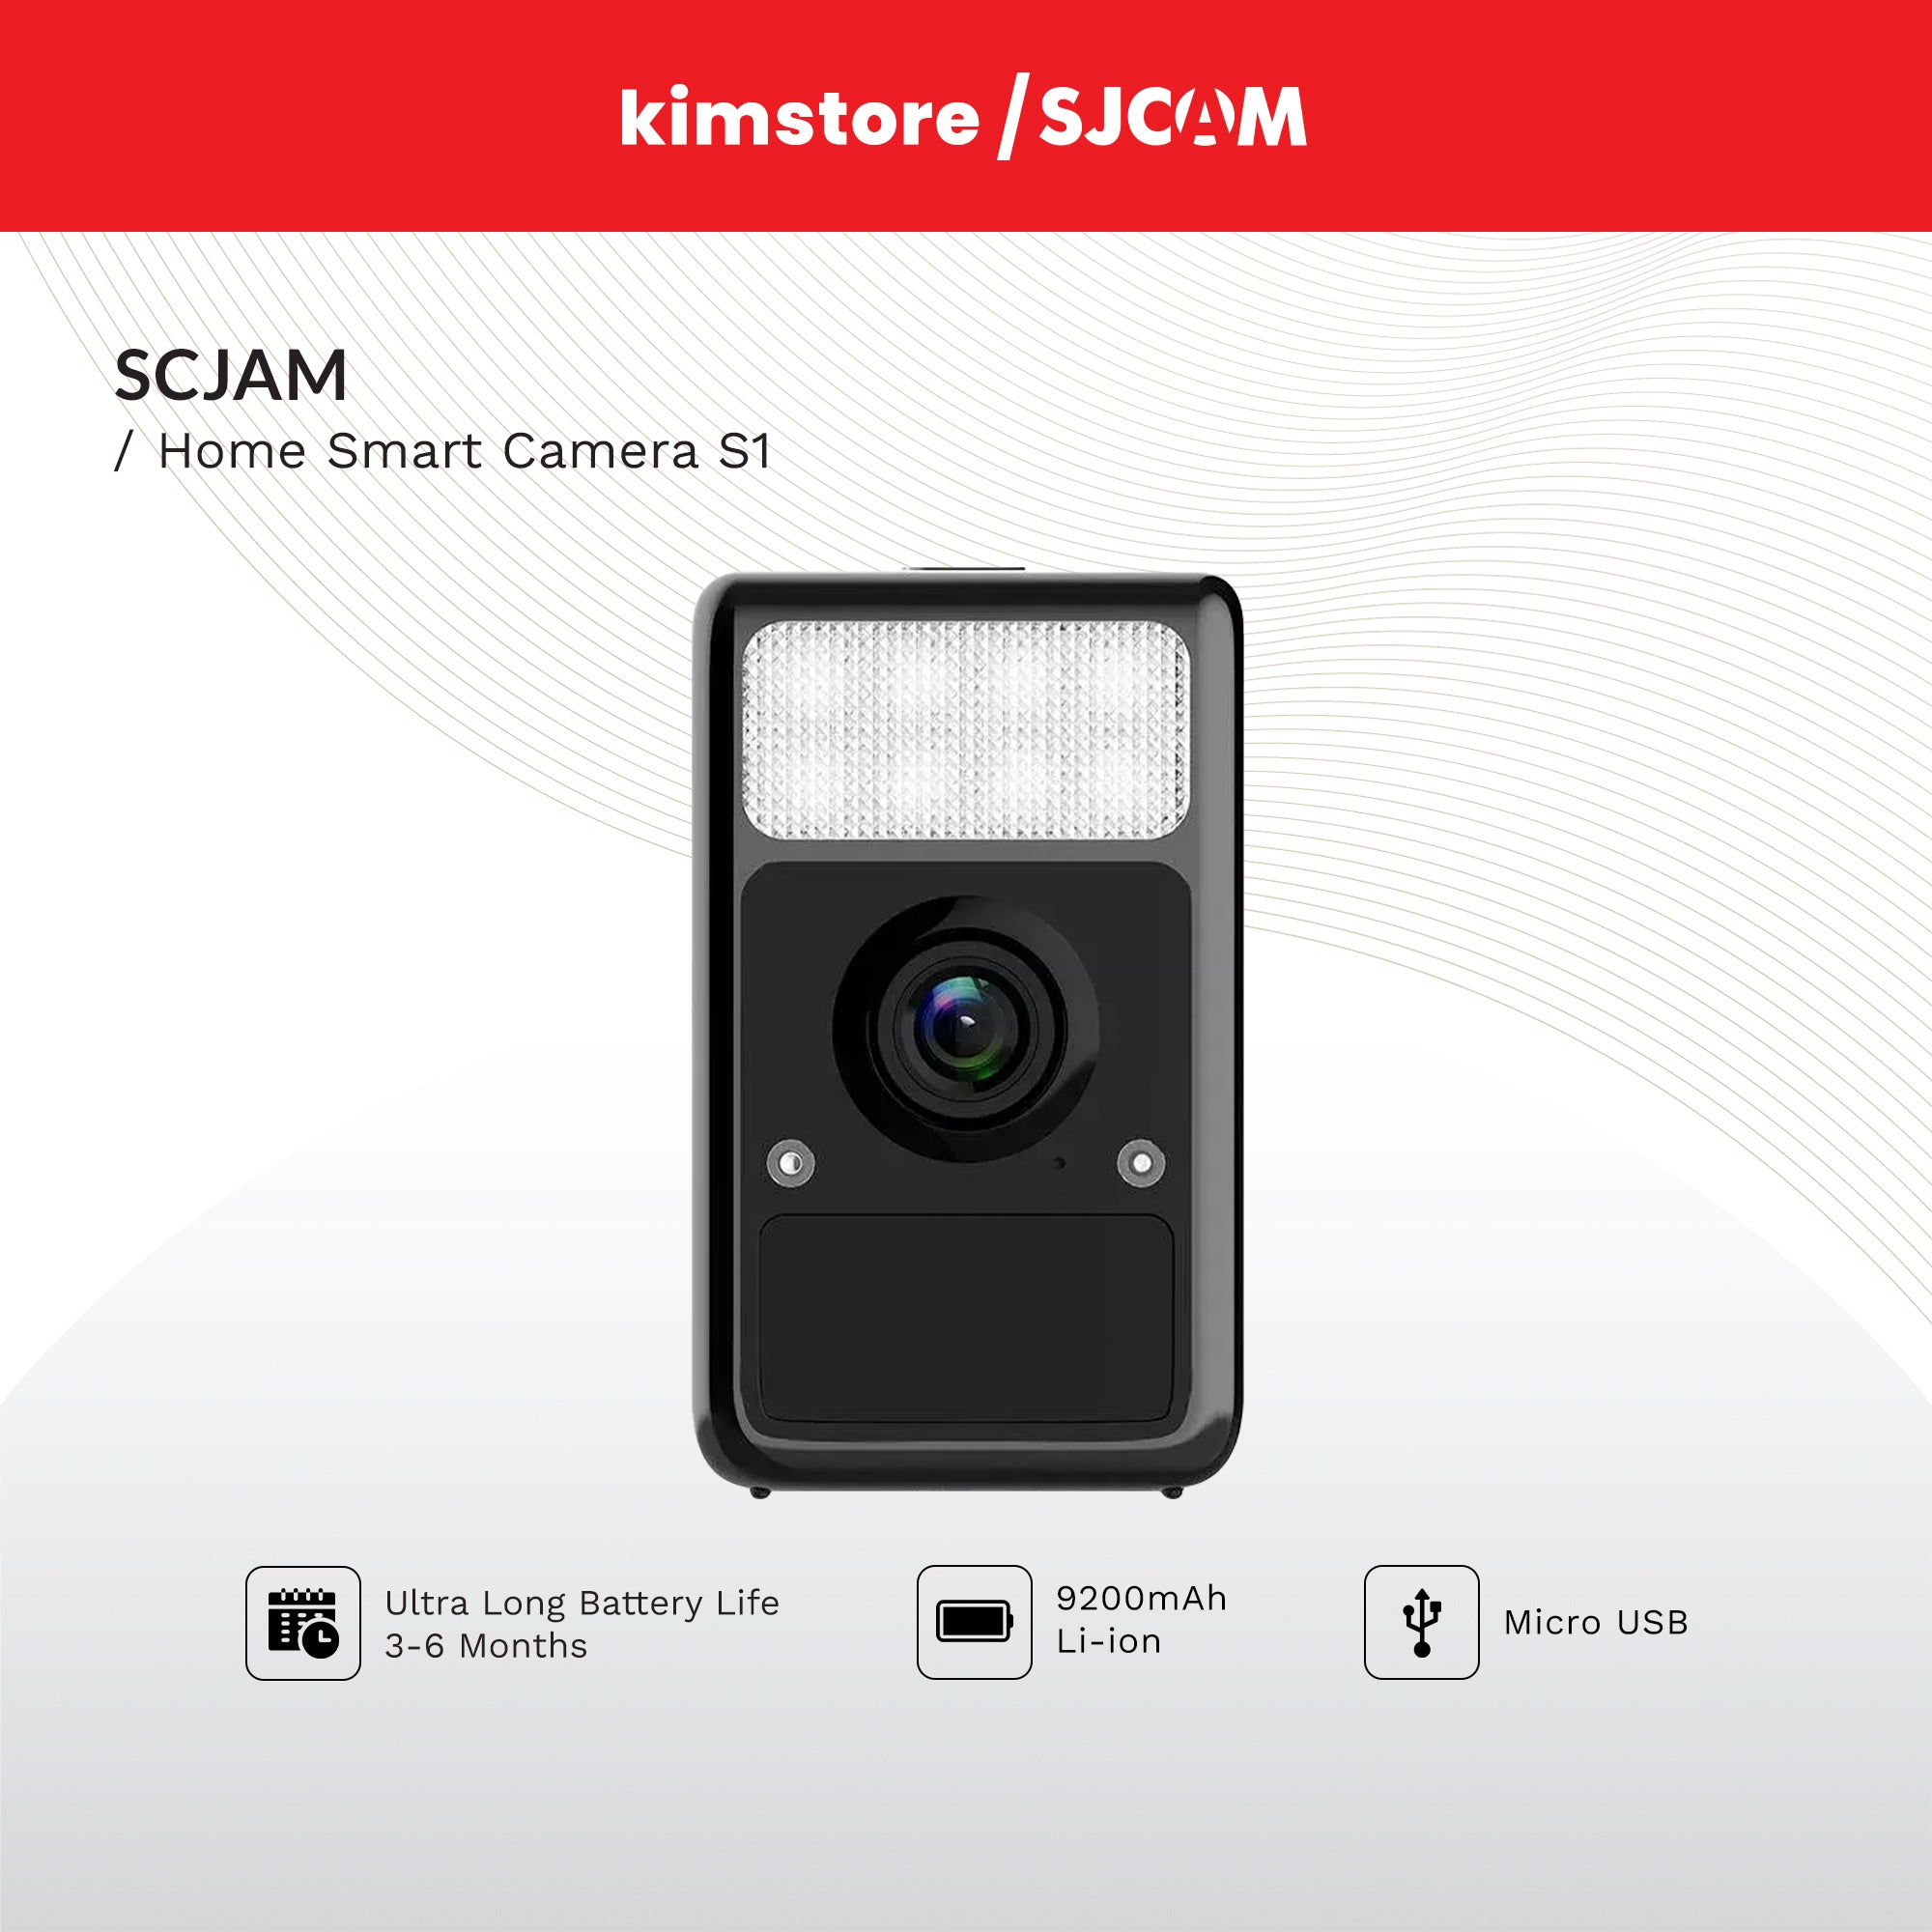 SJCAM Home Smart Camera S1